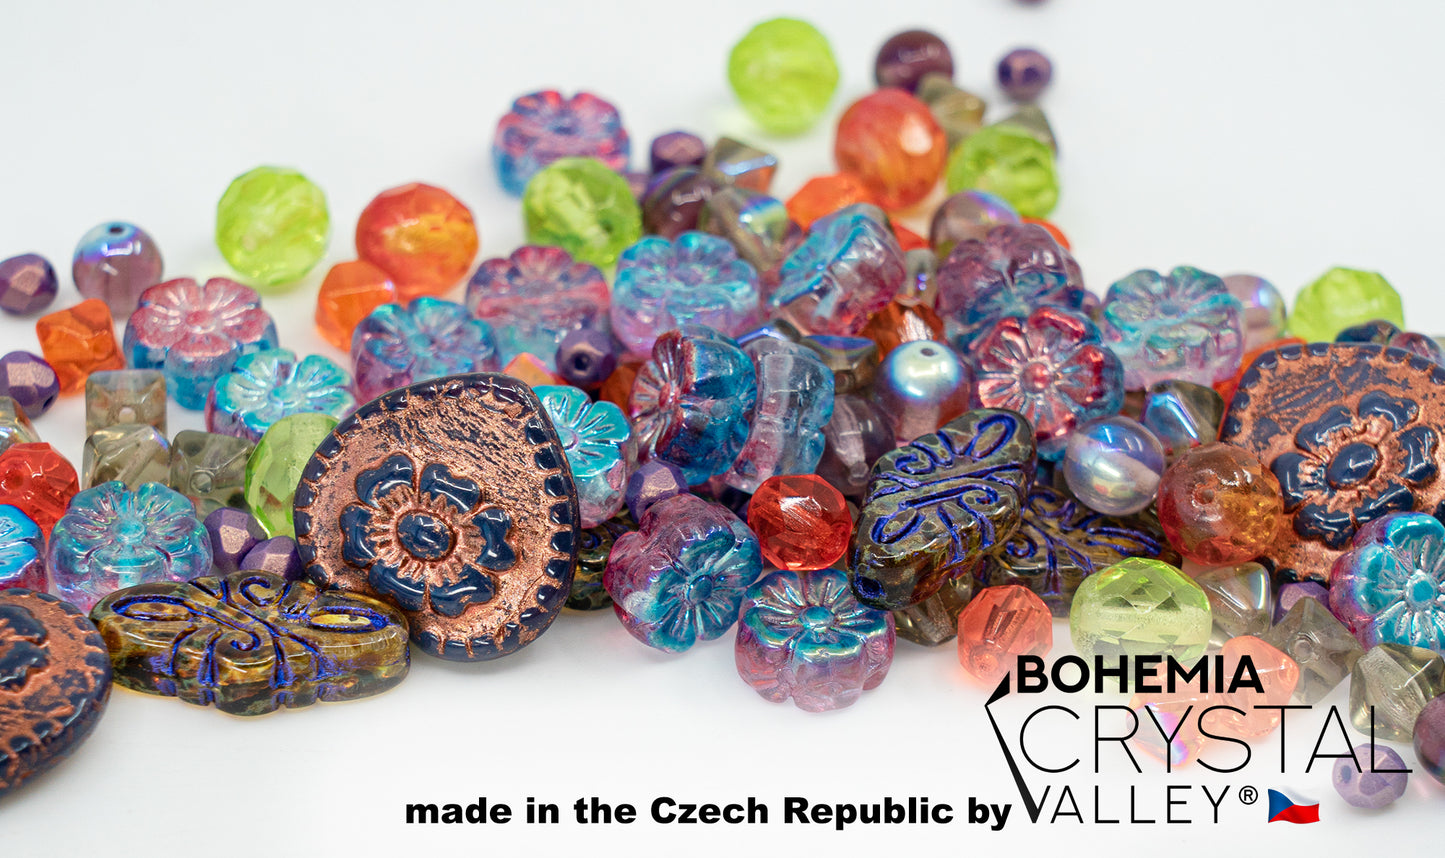 独特的捷克波西米亚玻璃压珠、疯狂紫绿铜、桌面切割、哑光和光泽、刻面火抛光剂、手工制作套件 BCV 的混合